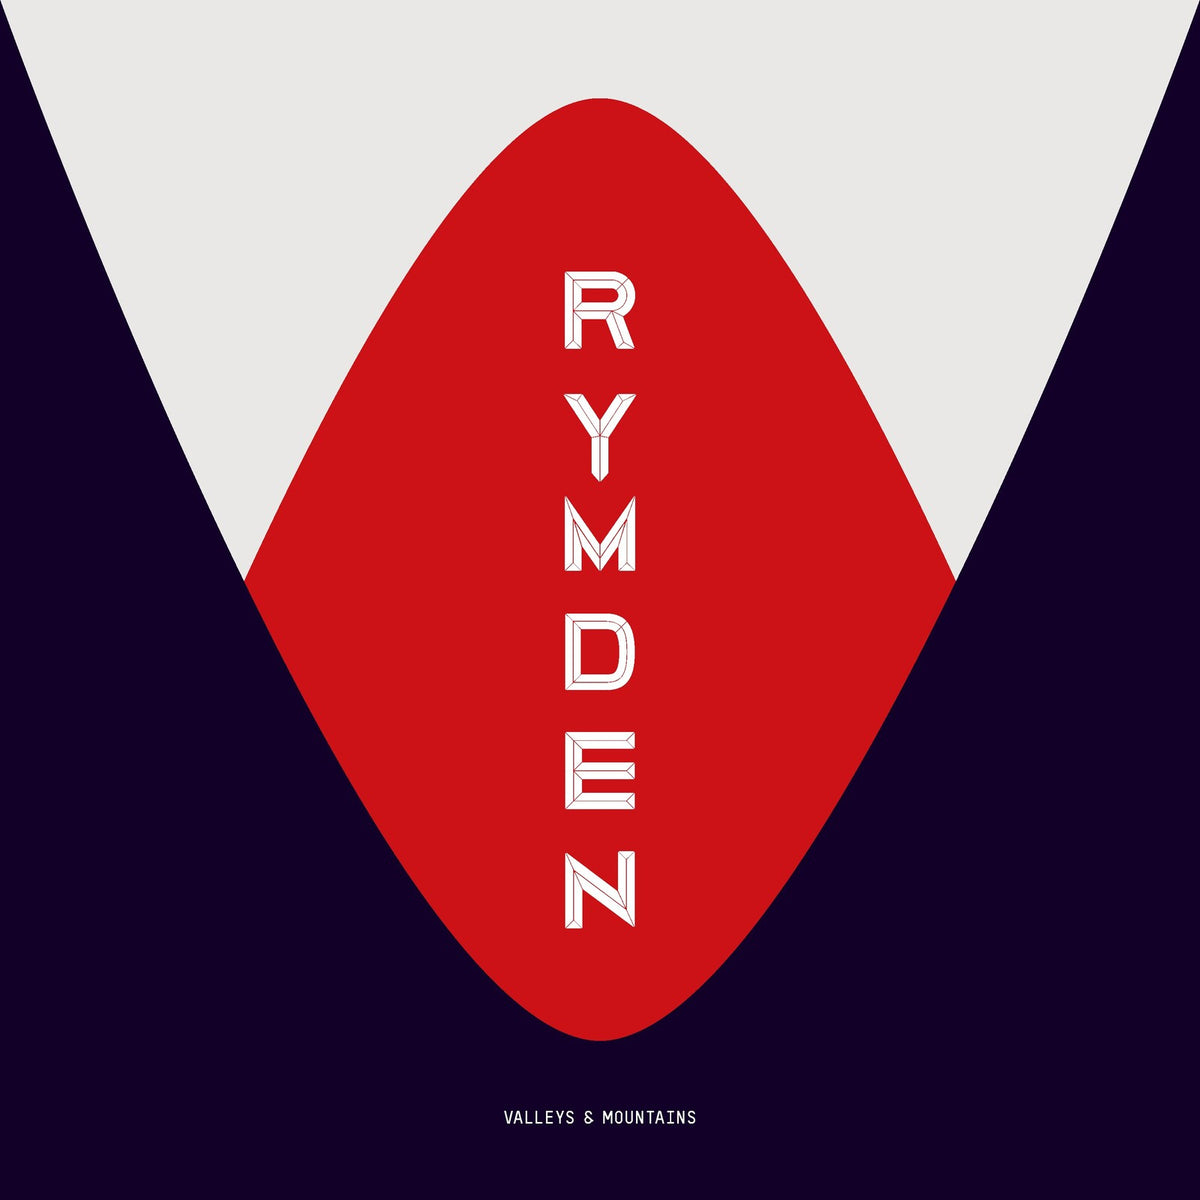 Rymden - Valleys & Mountains - 3779599